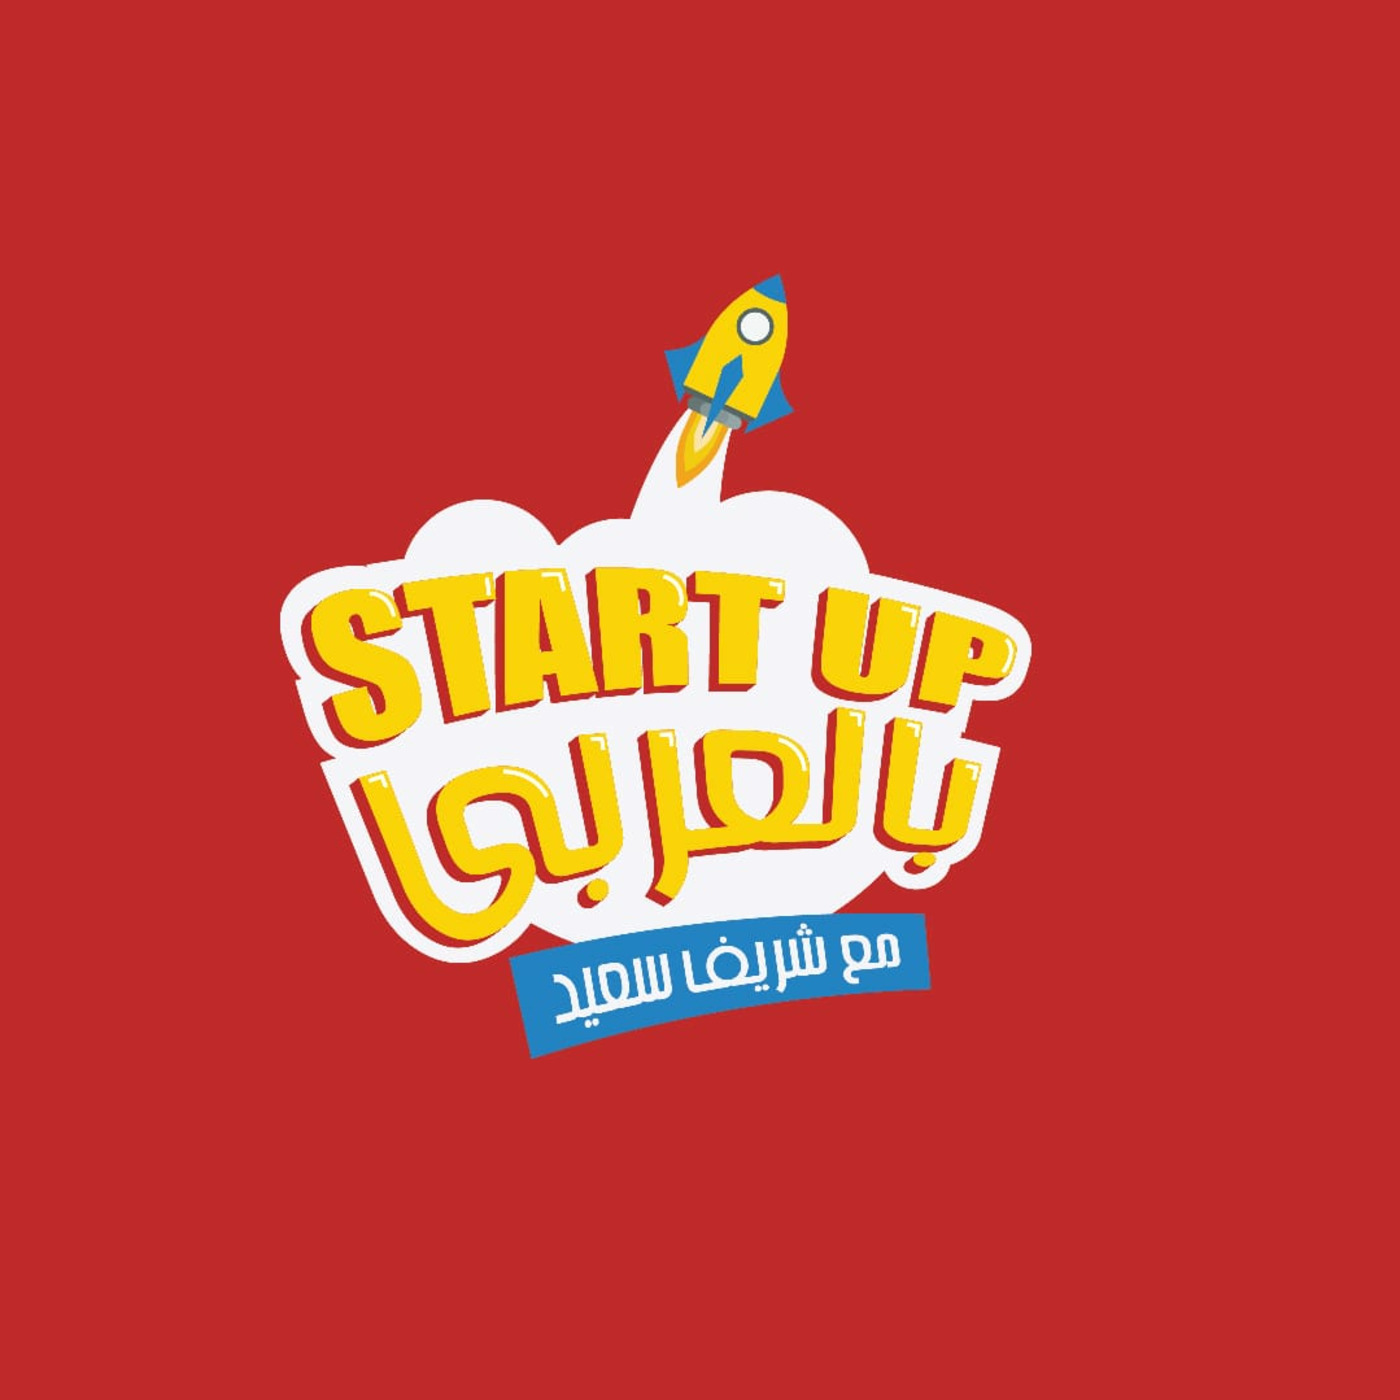 StartUp Bel 3araby - Sherif Saied